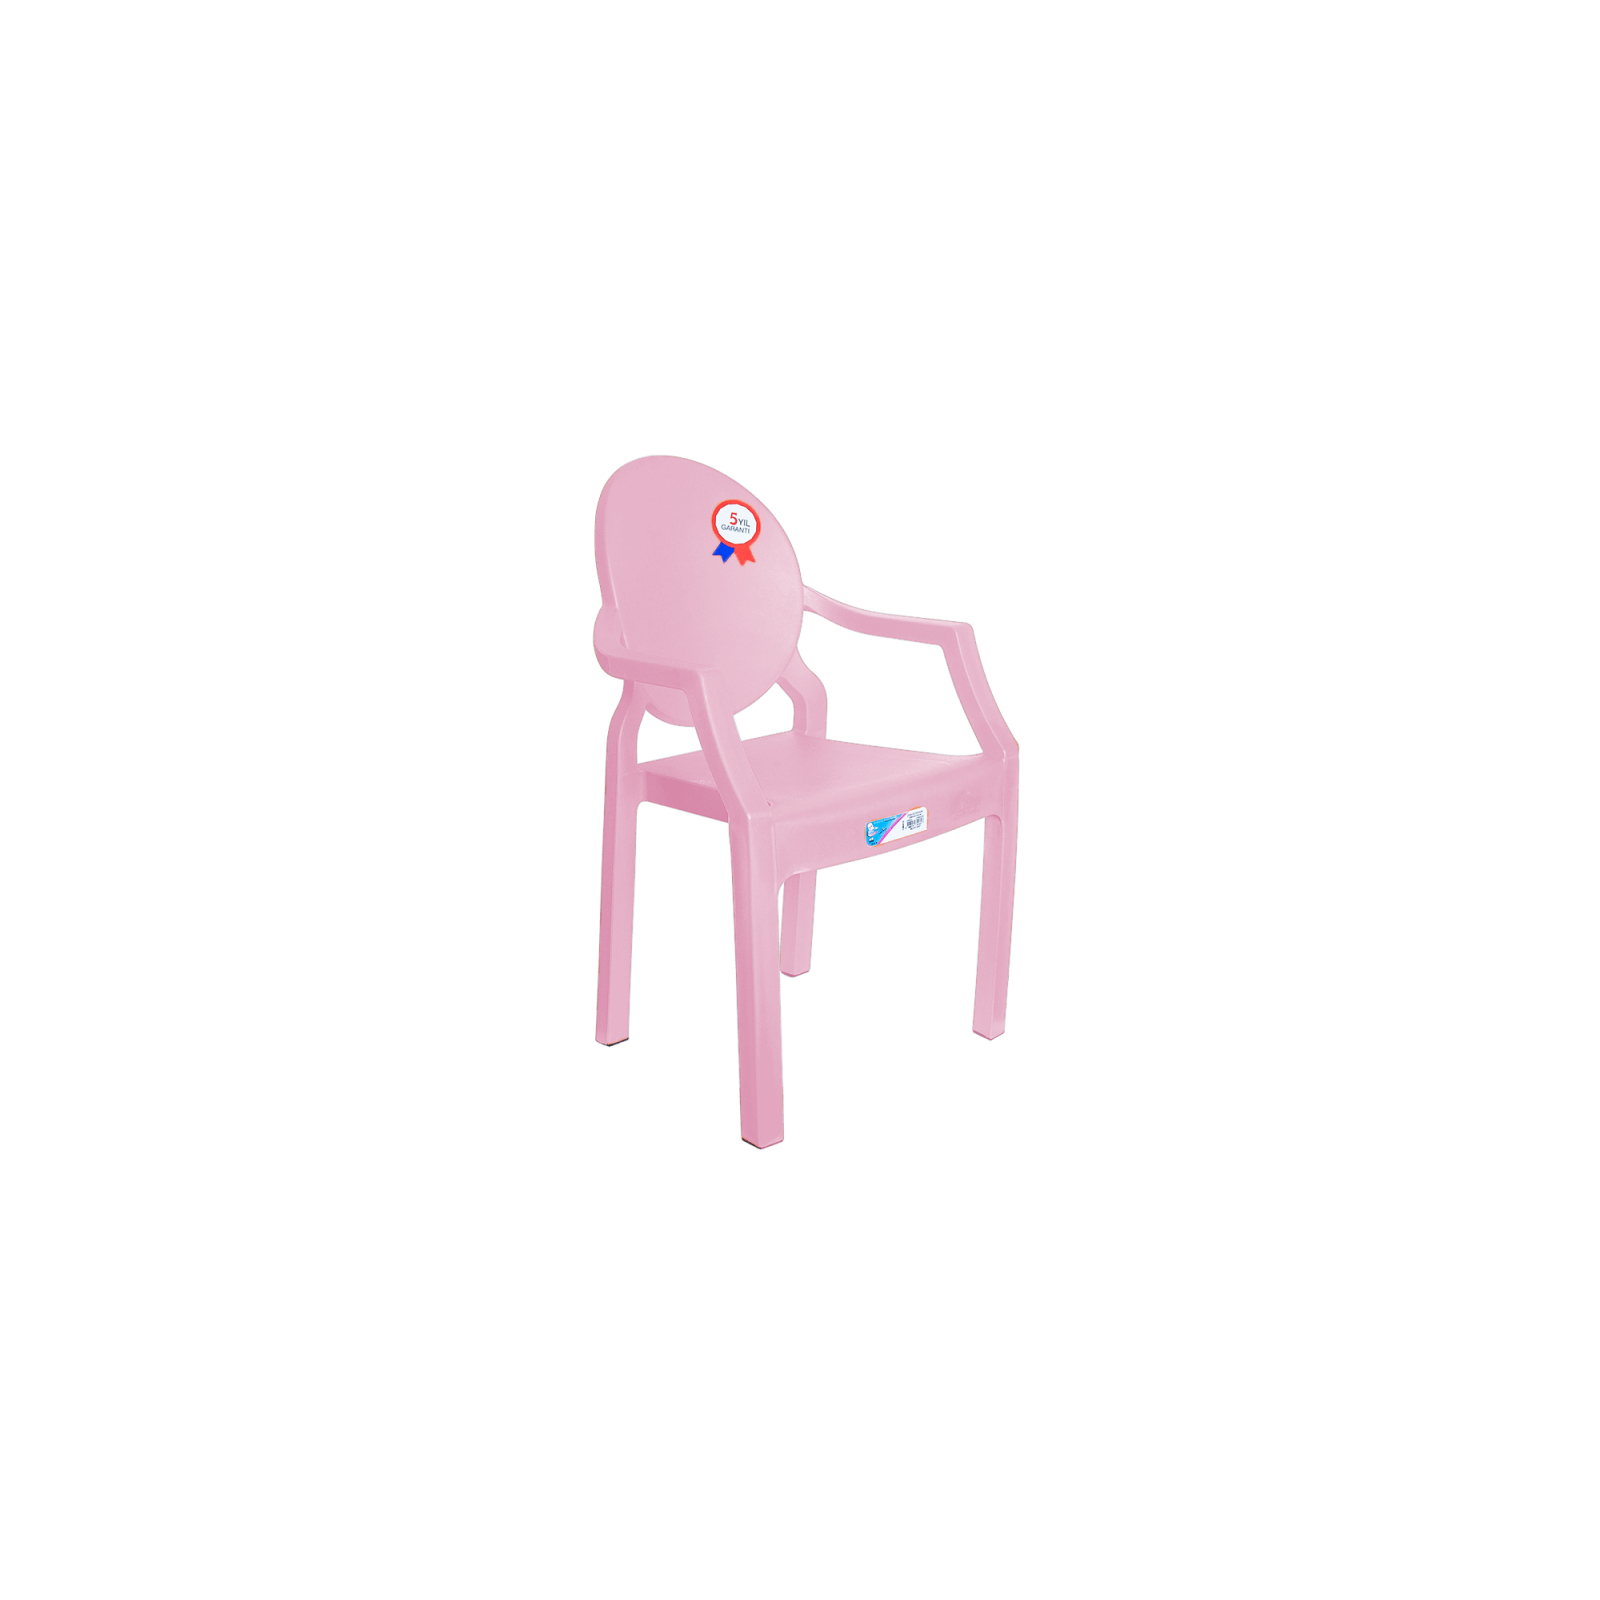 Кресло садовое Irak Plastik детское озорник розовое (4838)